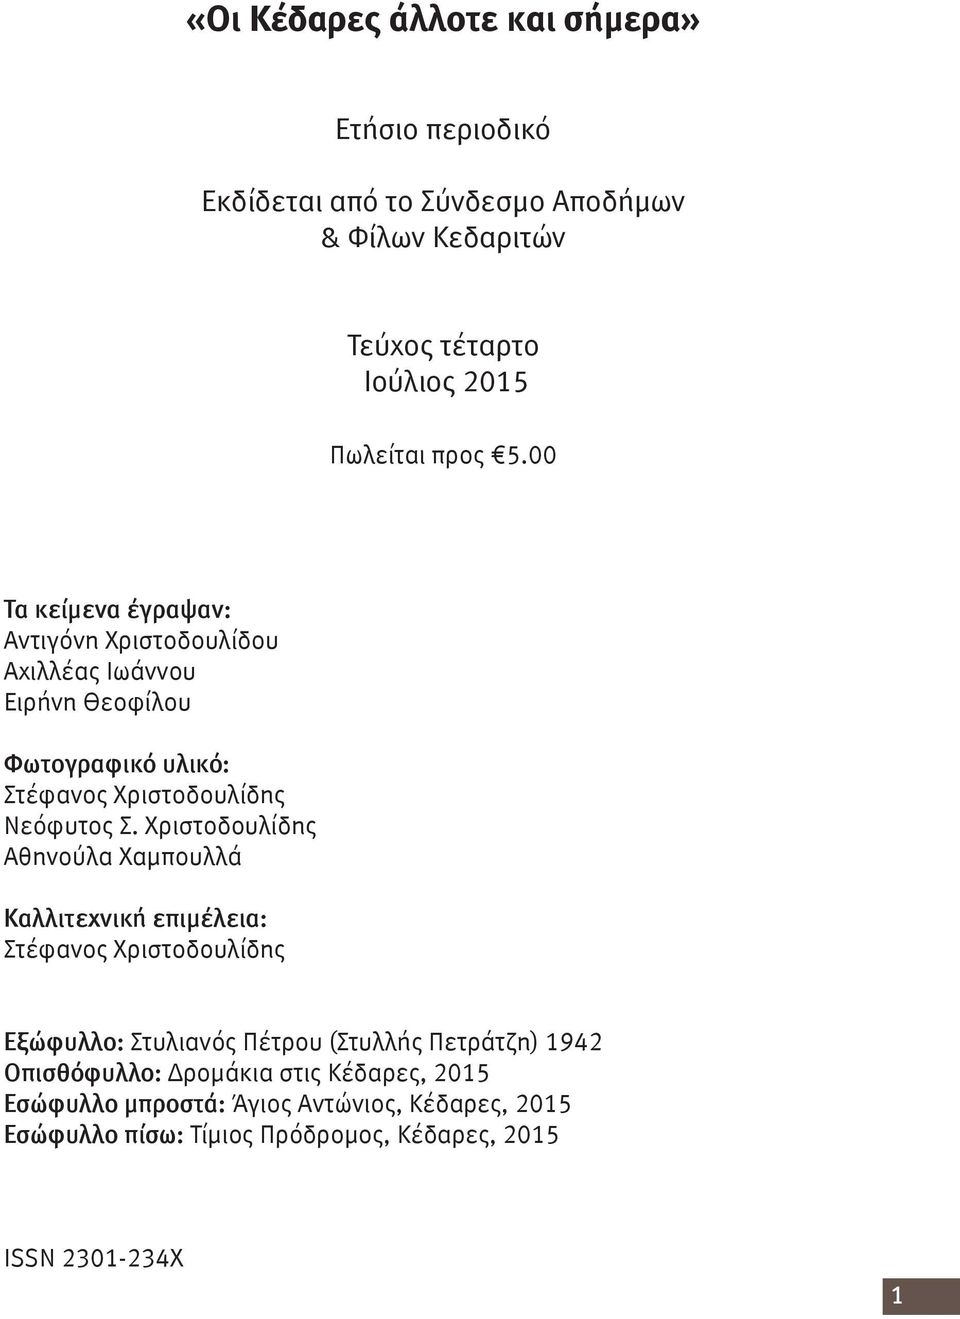 Χριστοδουλίδης Αθηνούλα Χαμπουλλά Καλλιτεχνική επιμέλεια: Στέφανος Χριστοδουλίδης Εξώφυλλο: Στυλιανός Πέτρου (Στυλλής Πετράτζη) 1942